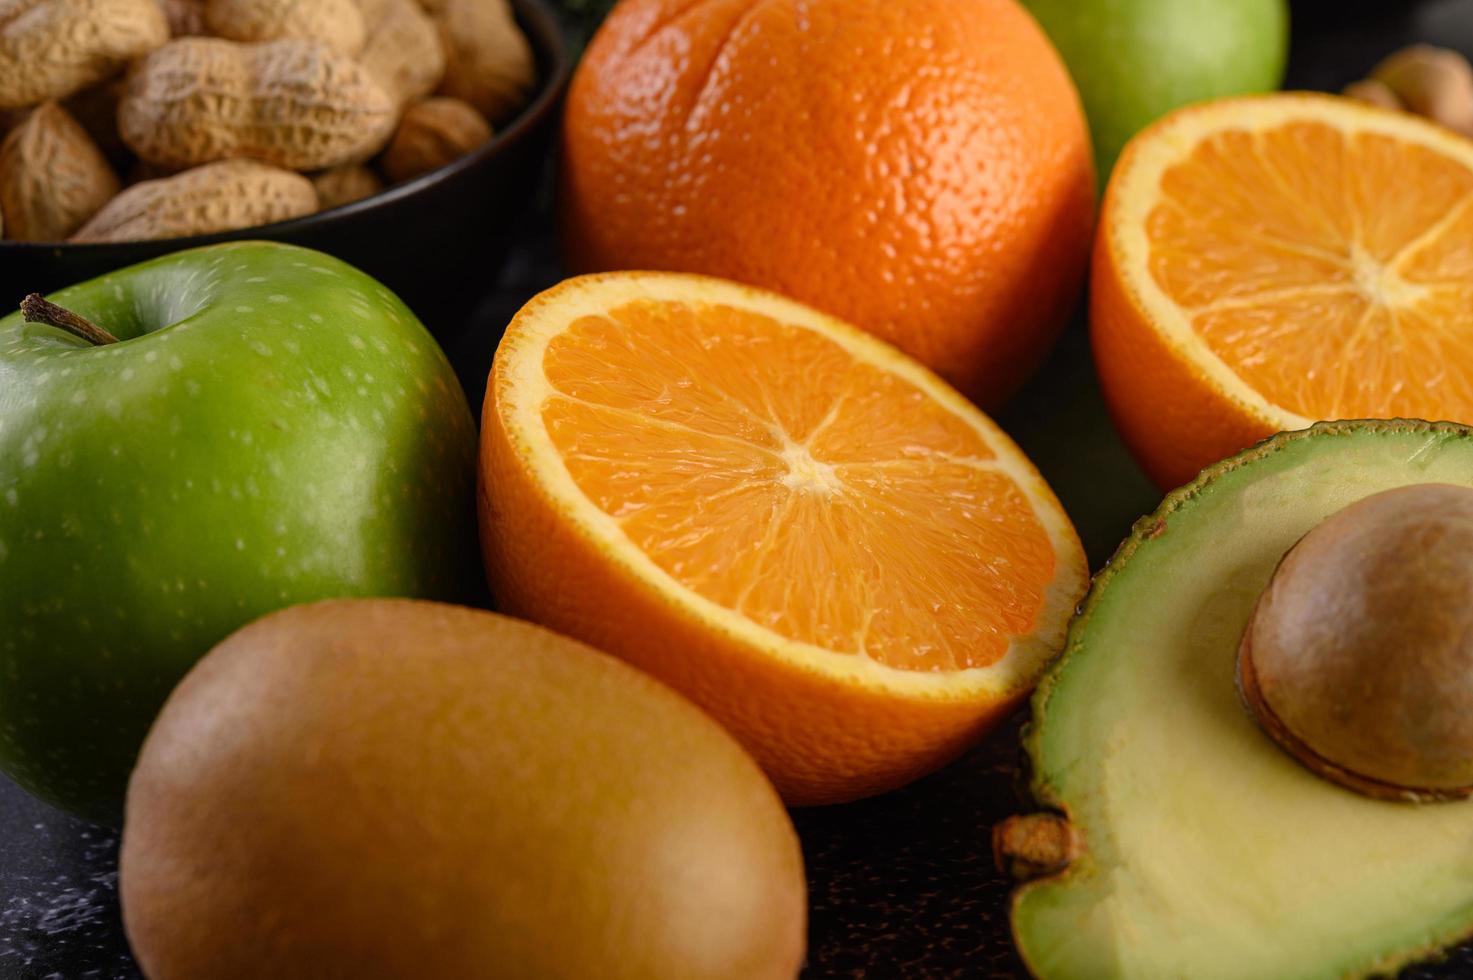 heldere close-up schijfje verse sinaasappel, appel, kiwi en avocado foto